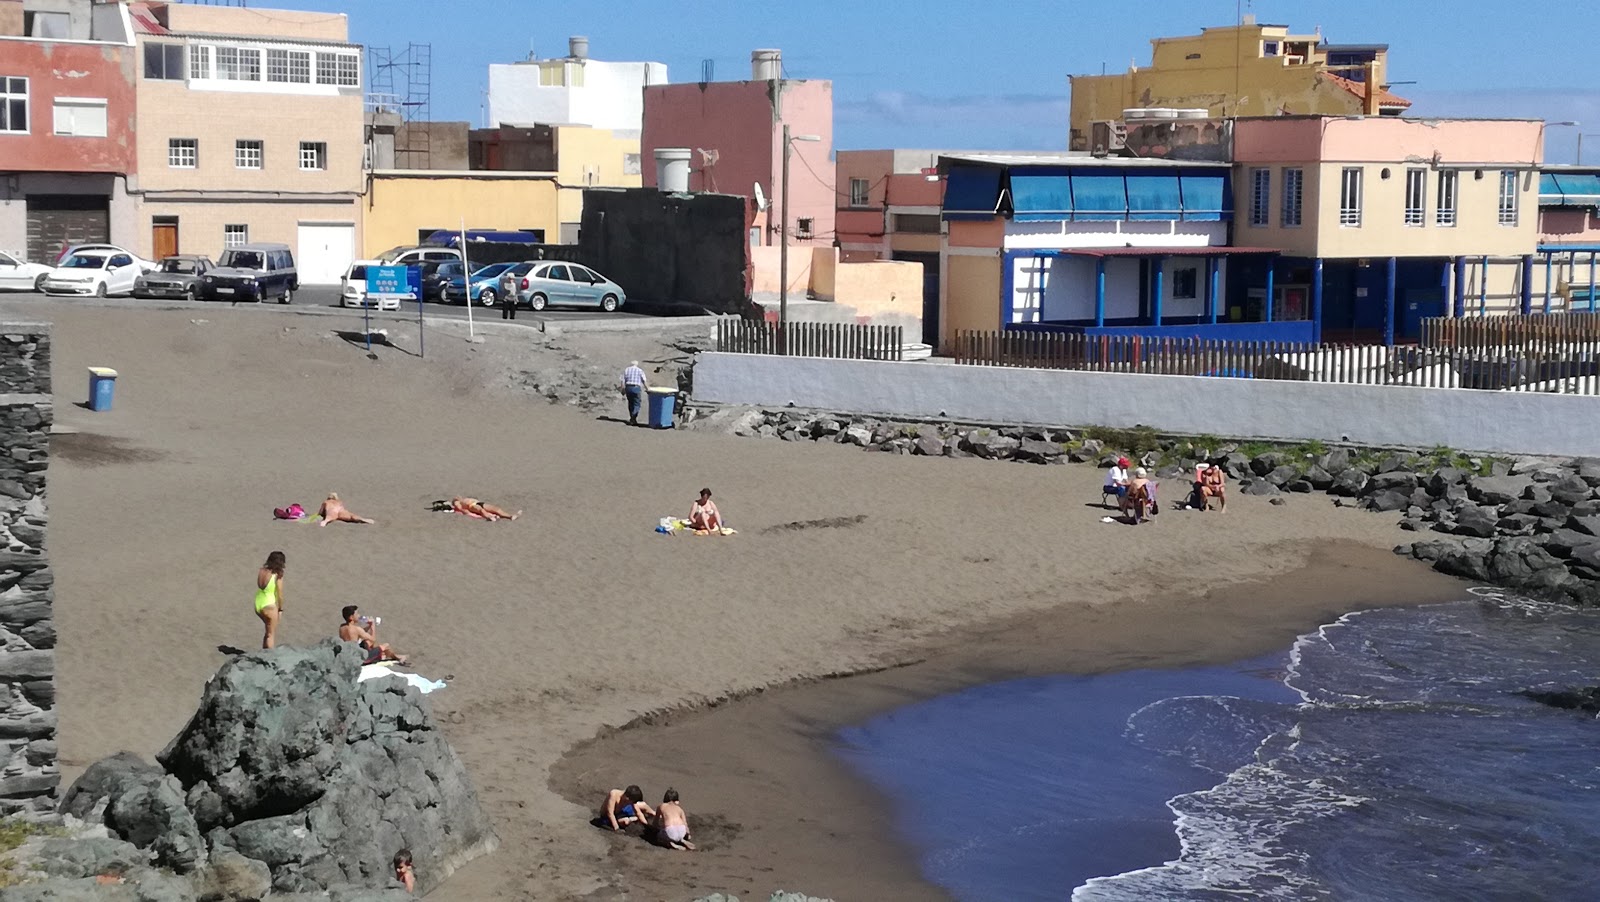 Φωτογραφία του Playa del Muelle με επίπεδο καθαριότητας πολύ καθαρό